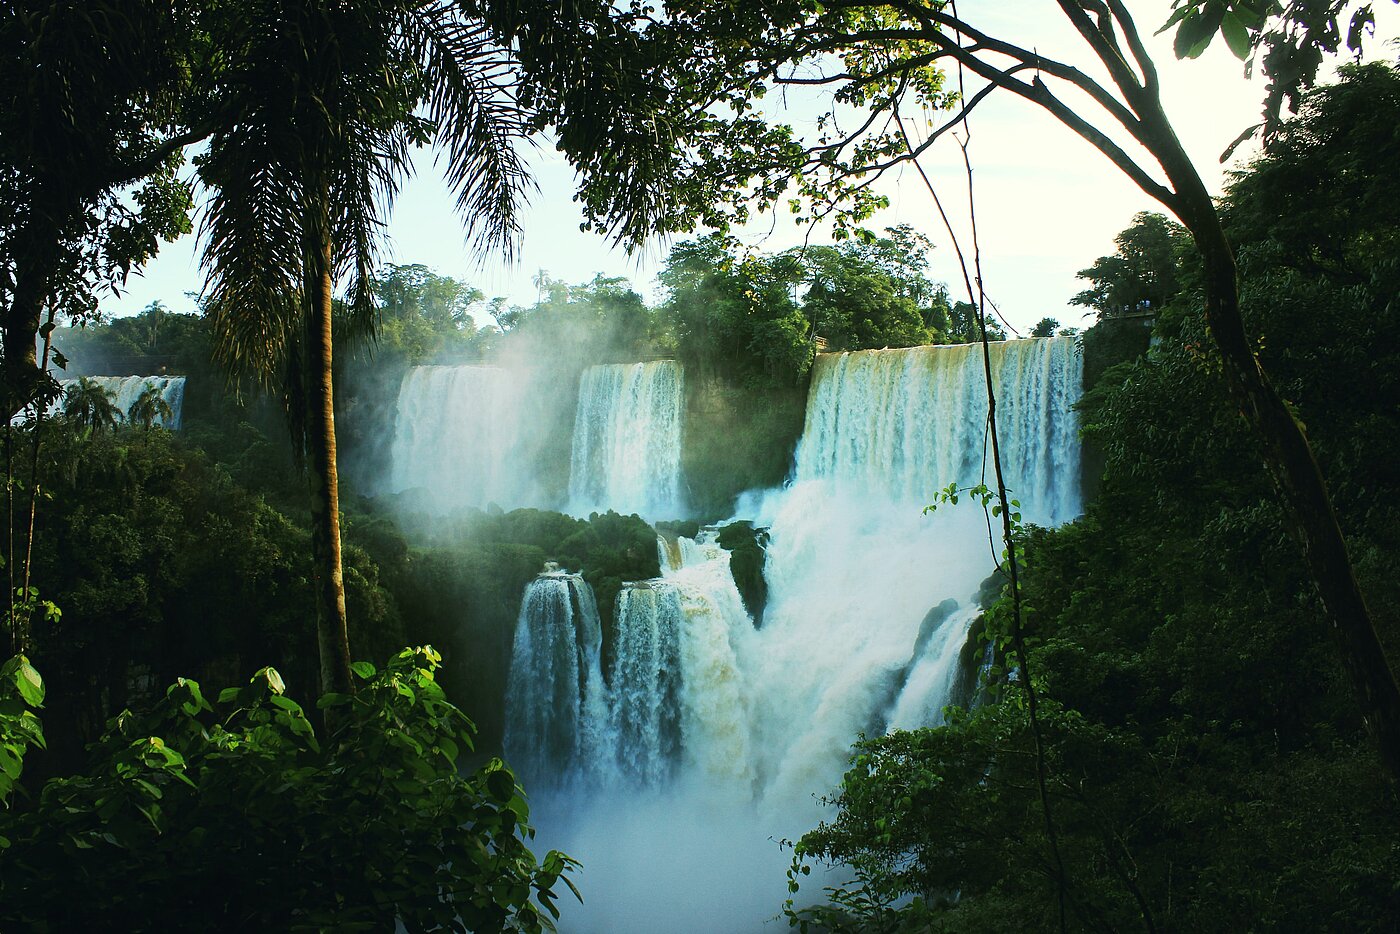 Das Fotot zeigt einen tropischen Wasserfall.